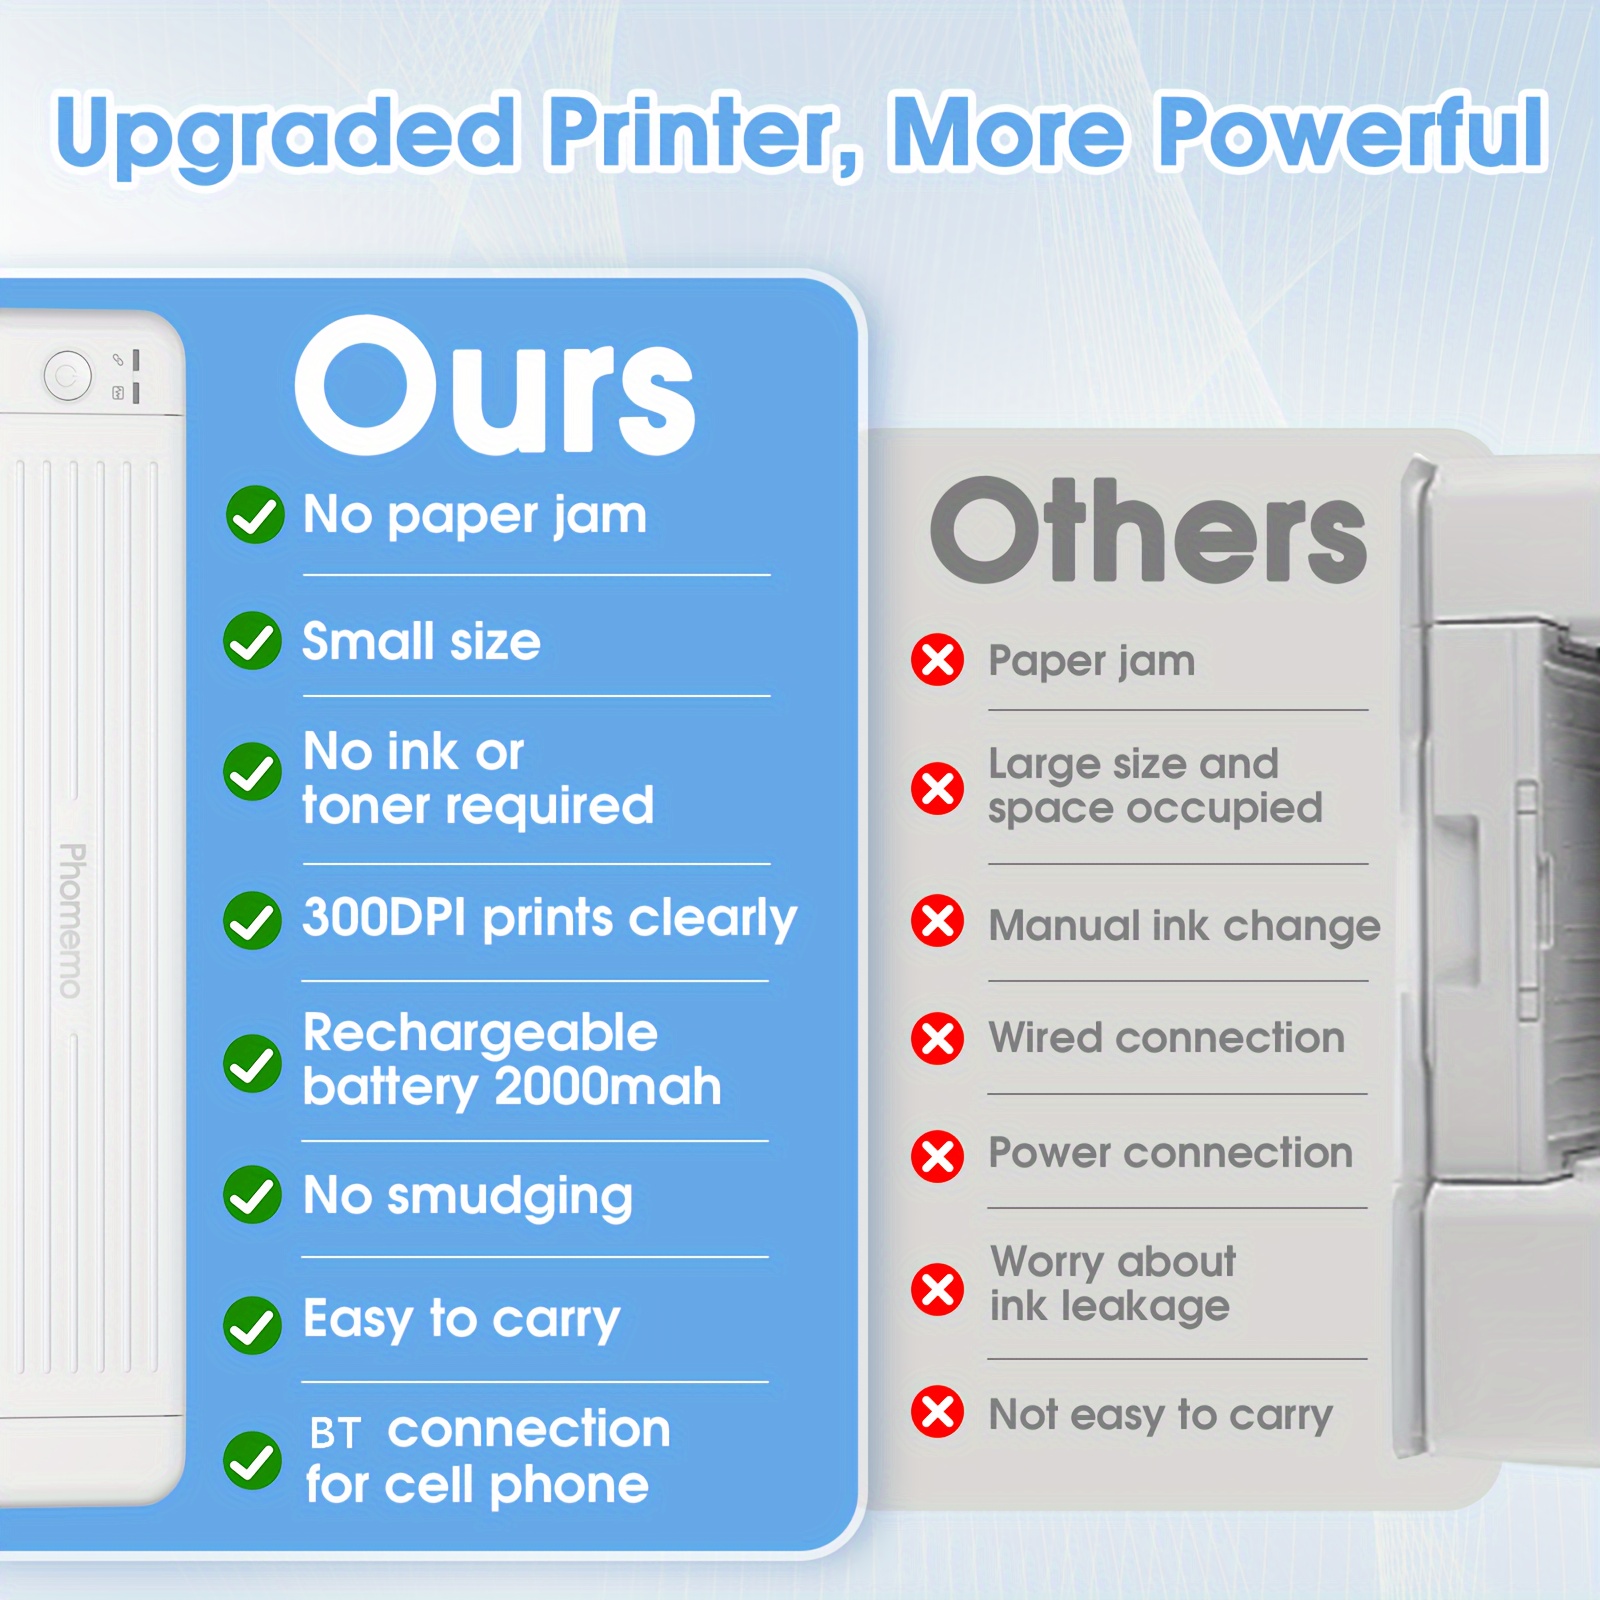 Xprinter XP-T81 High Resolution 300DPI Mini Impresora Portatil Thermal  Printer For Home - China Thermal Printer, portable printer